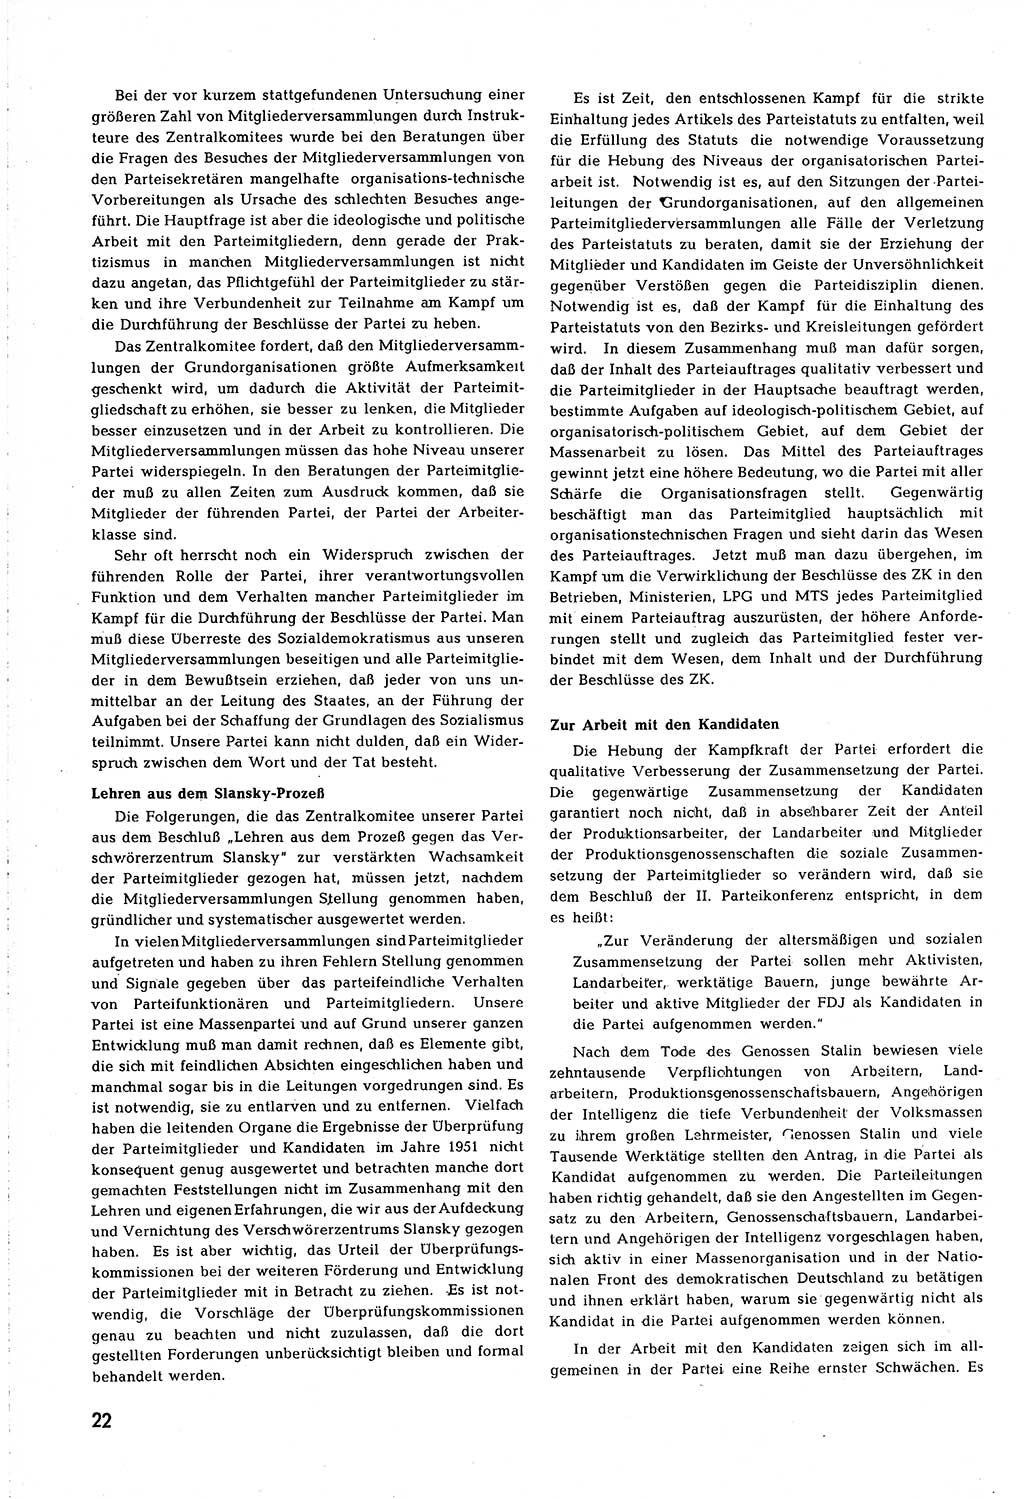 Neuer Weg (NW), Organ des Zentralkomitees (ZK) [Sozialistische Einheitspartei Deutschlands (SED)] für alle Parteiarbeiter, 8. Jahrgang [Deutsche Demokratische Republik (DDR)] 1953, Heft 10/22 (NW ZK SED DDR 1953, H. 10/22)